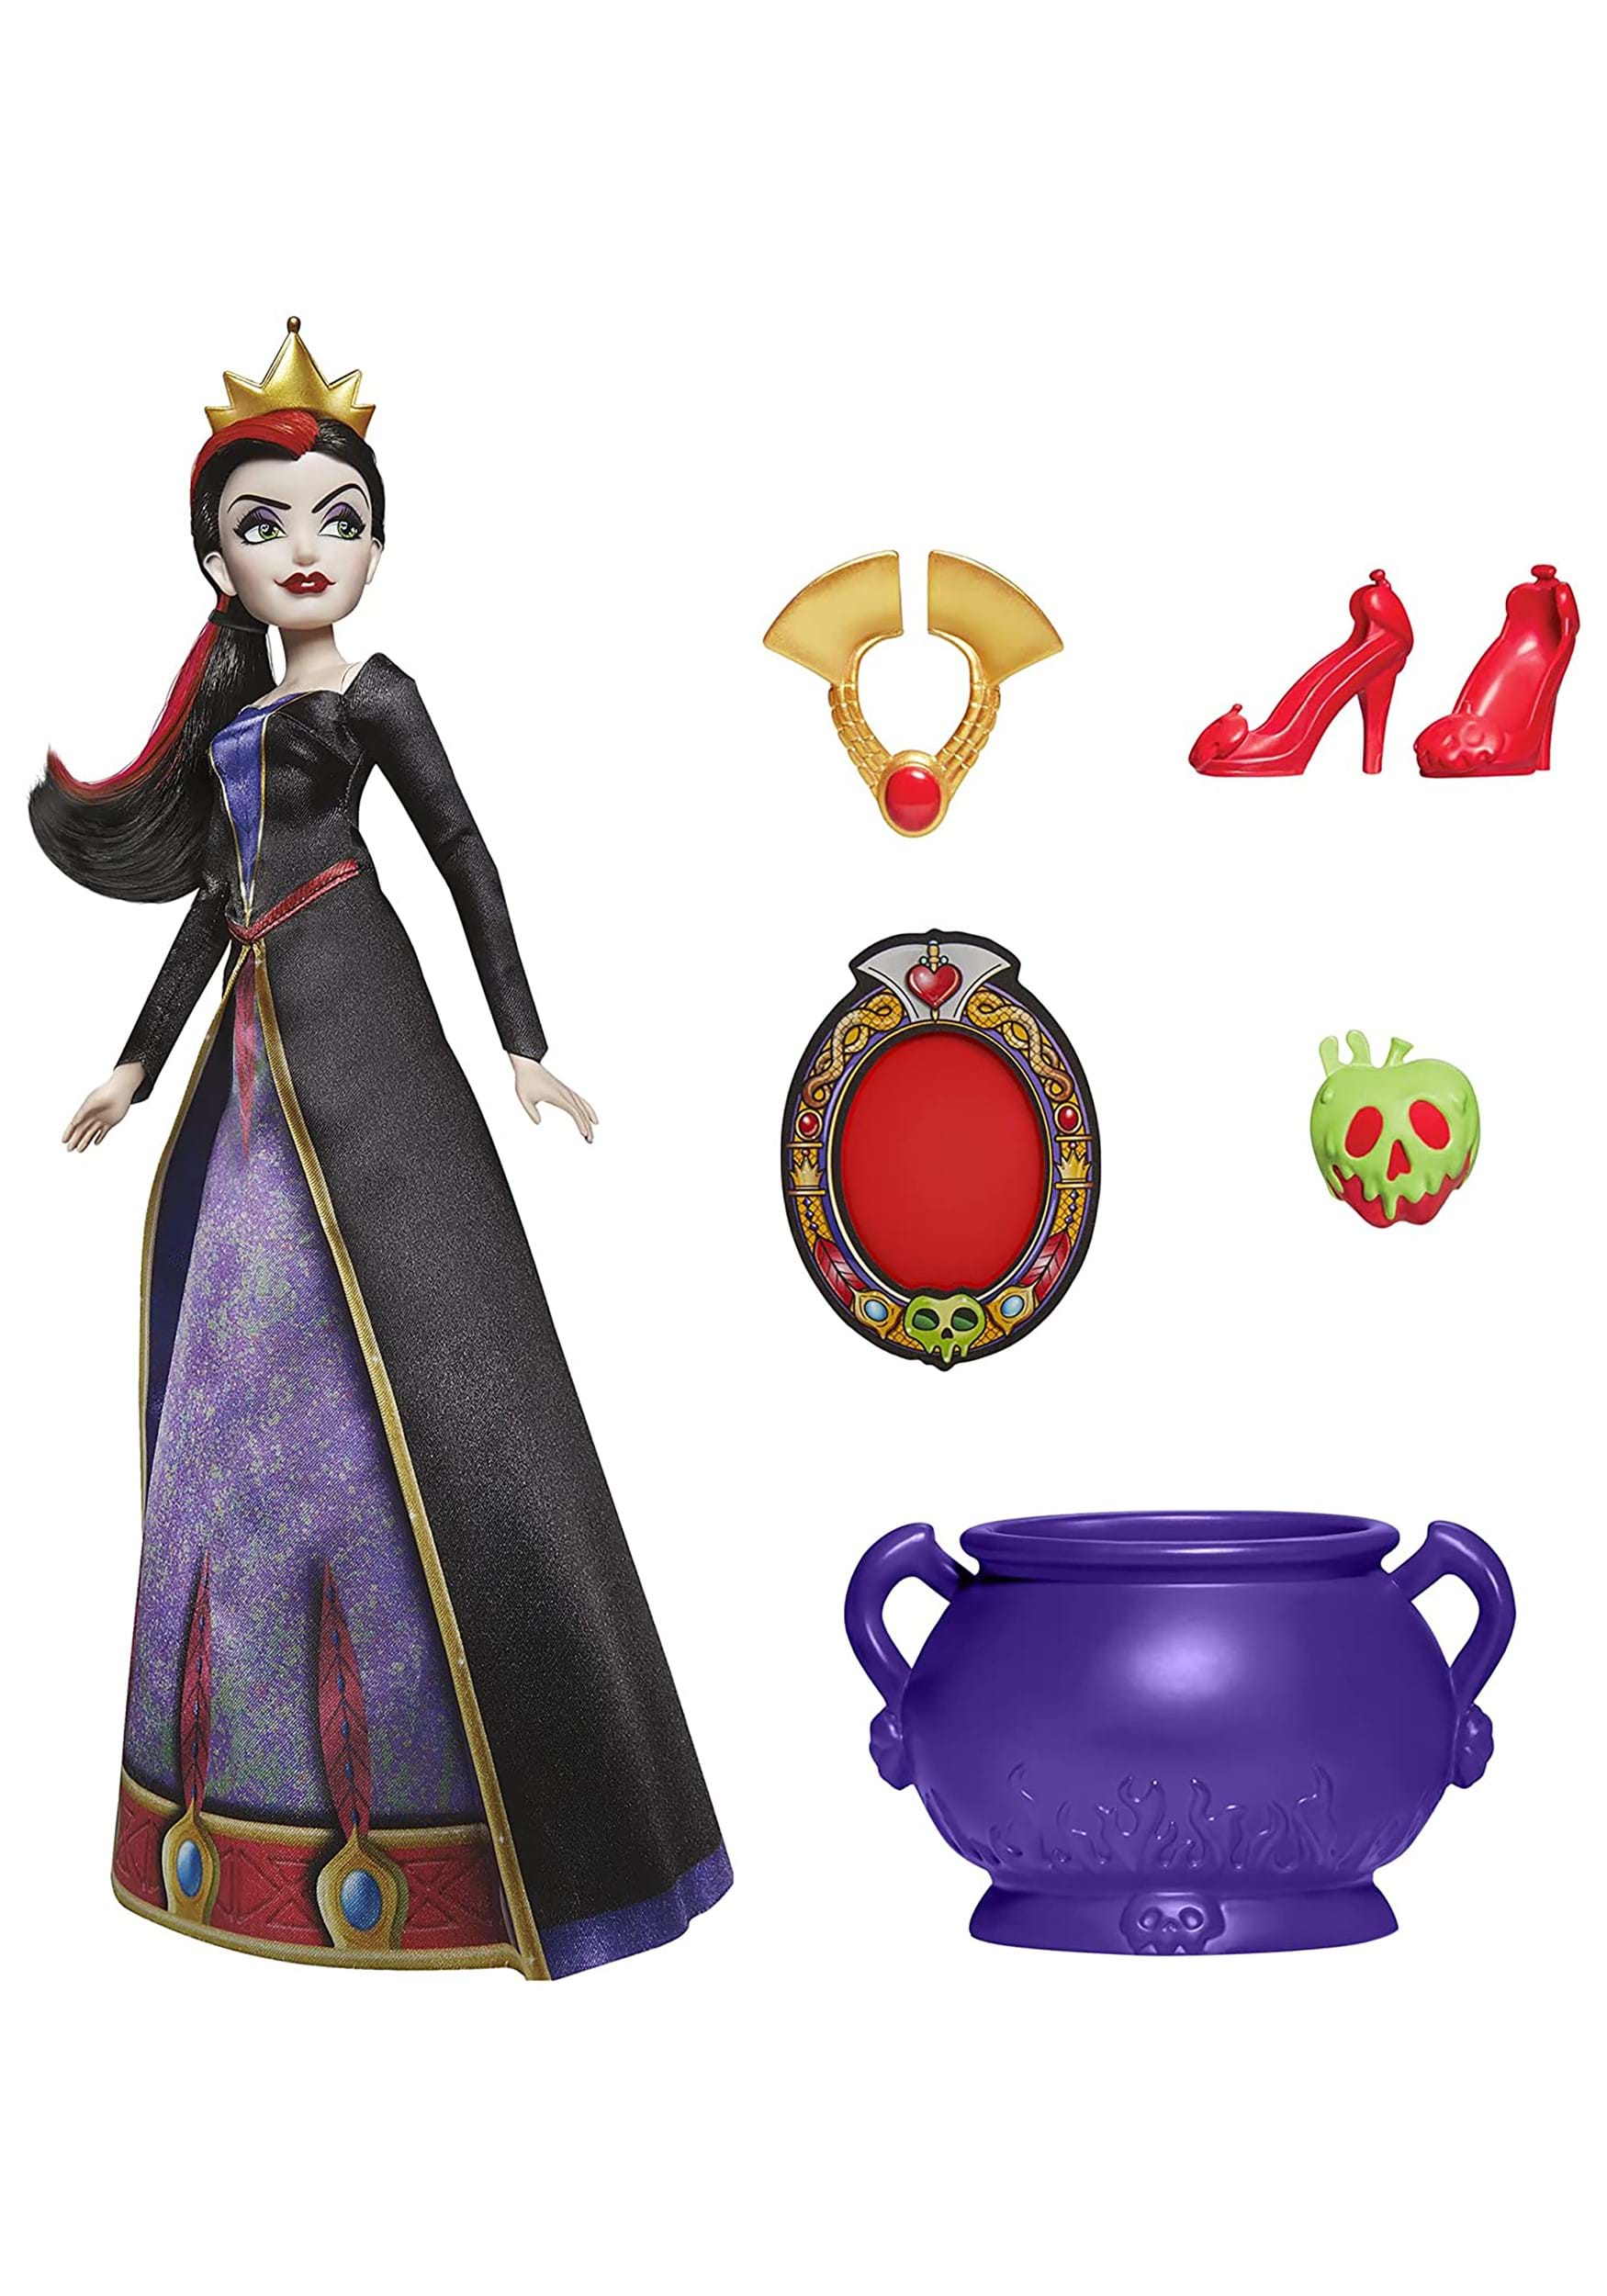 Disney Evil Queen Villains Fashion Doll